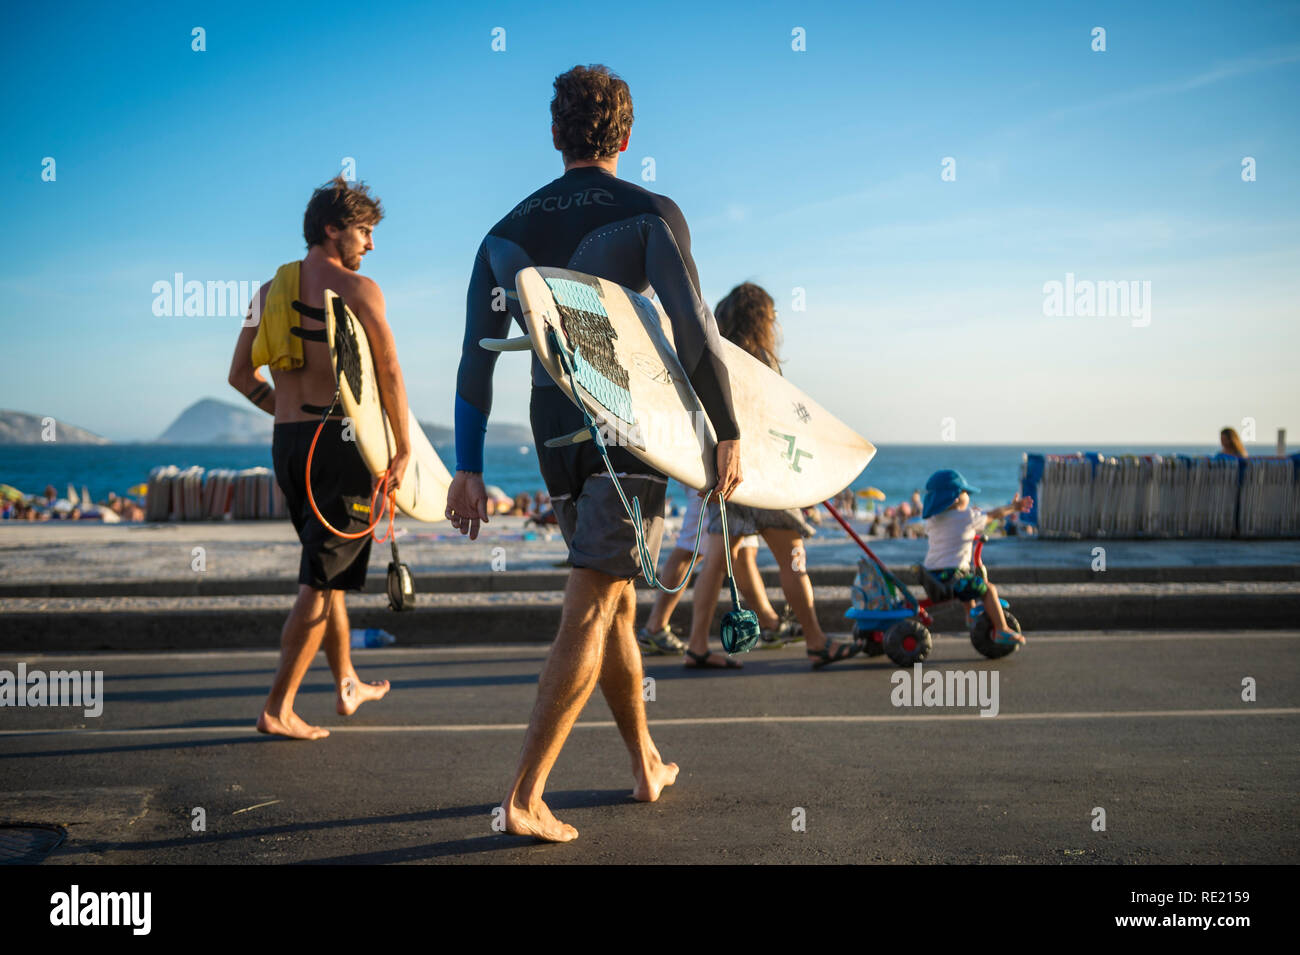 RIO DE JANEIRO - MÄRZ 24, 2017: Ein paar barfüßige junge Surfer Spaziergang auf der Straße mit Surfbrettern auf den Ipanema Beach Boardwalk. Stockfoto